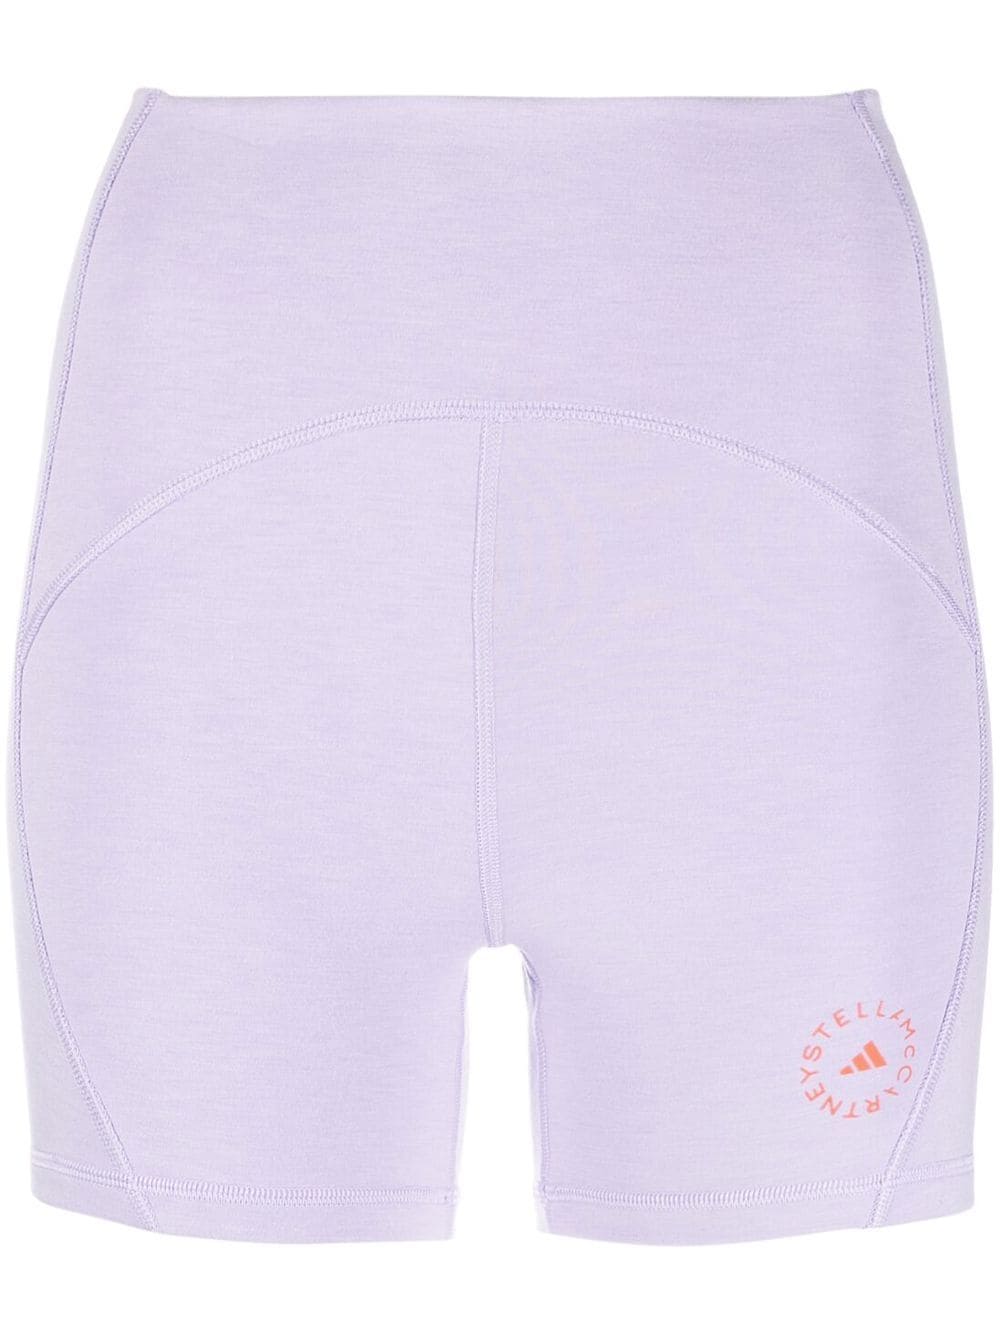 Adidas By Stella McCartney TrueStrength Yoga Shorts - Farfetch